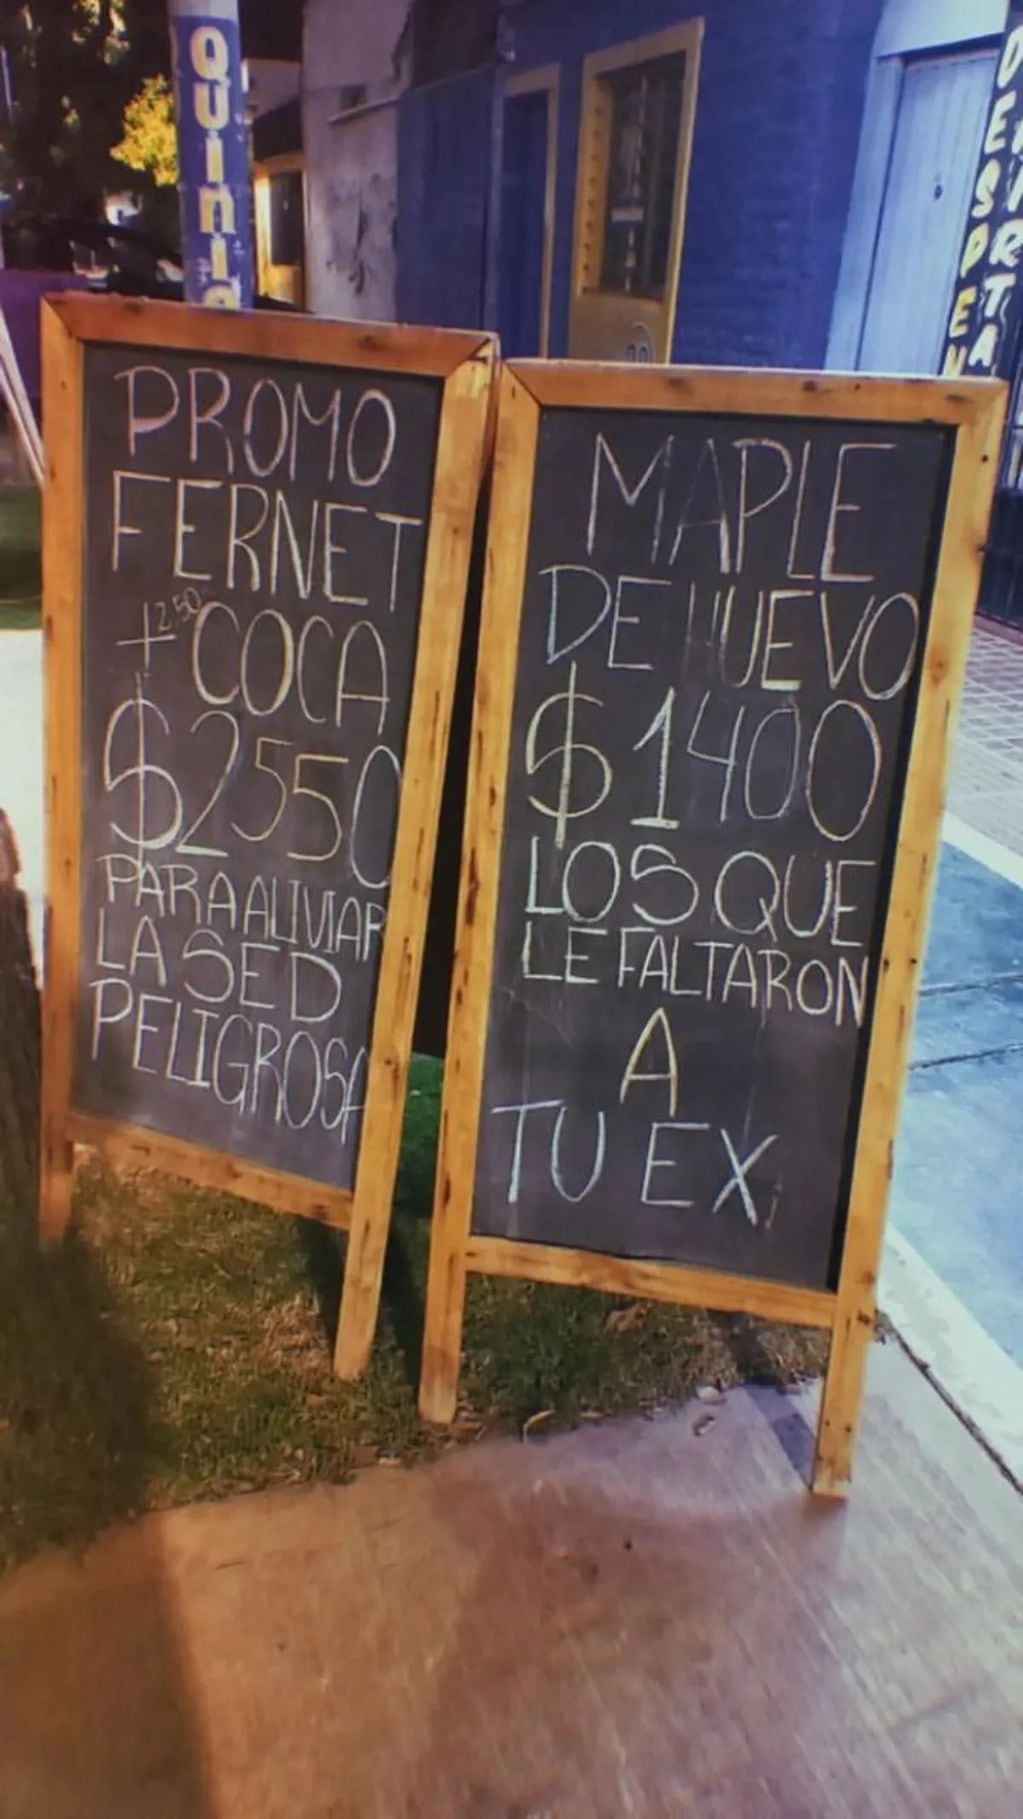 Un local de Mendoza colocó carteles muy curiosos y se hizo viral